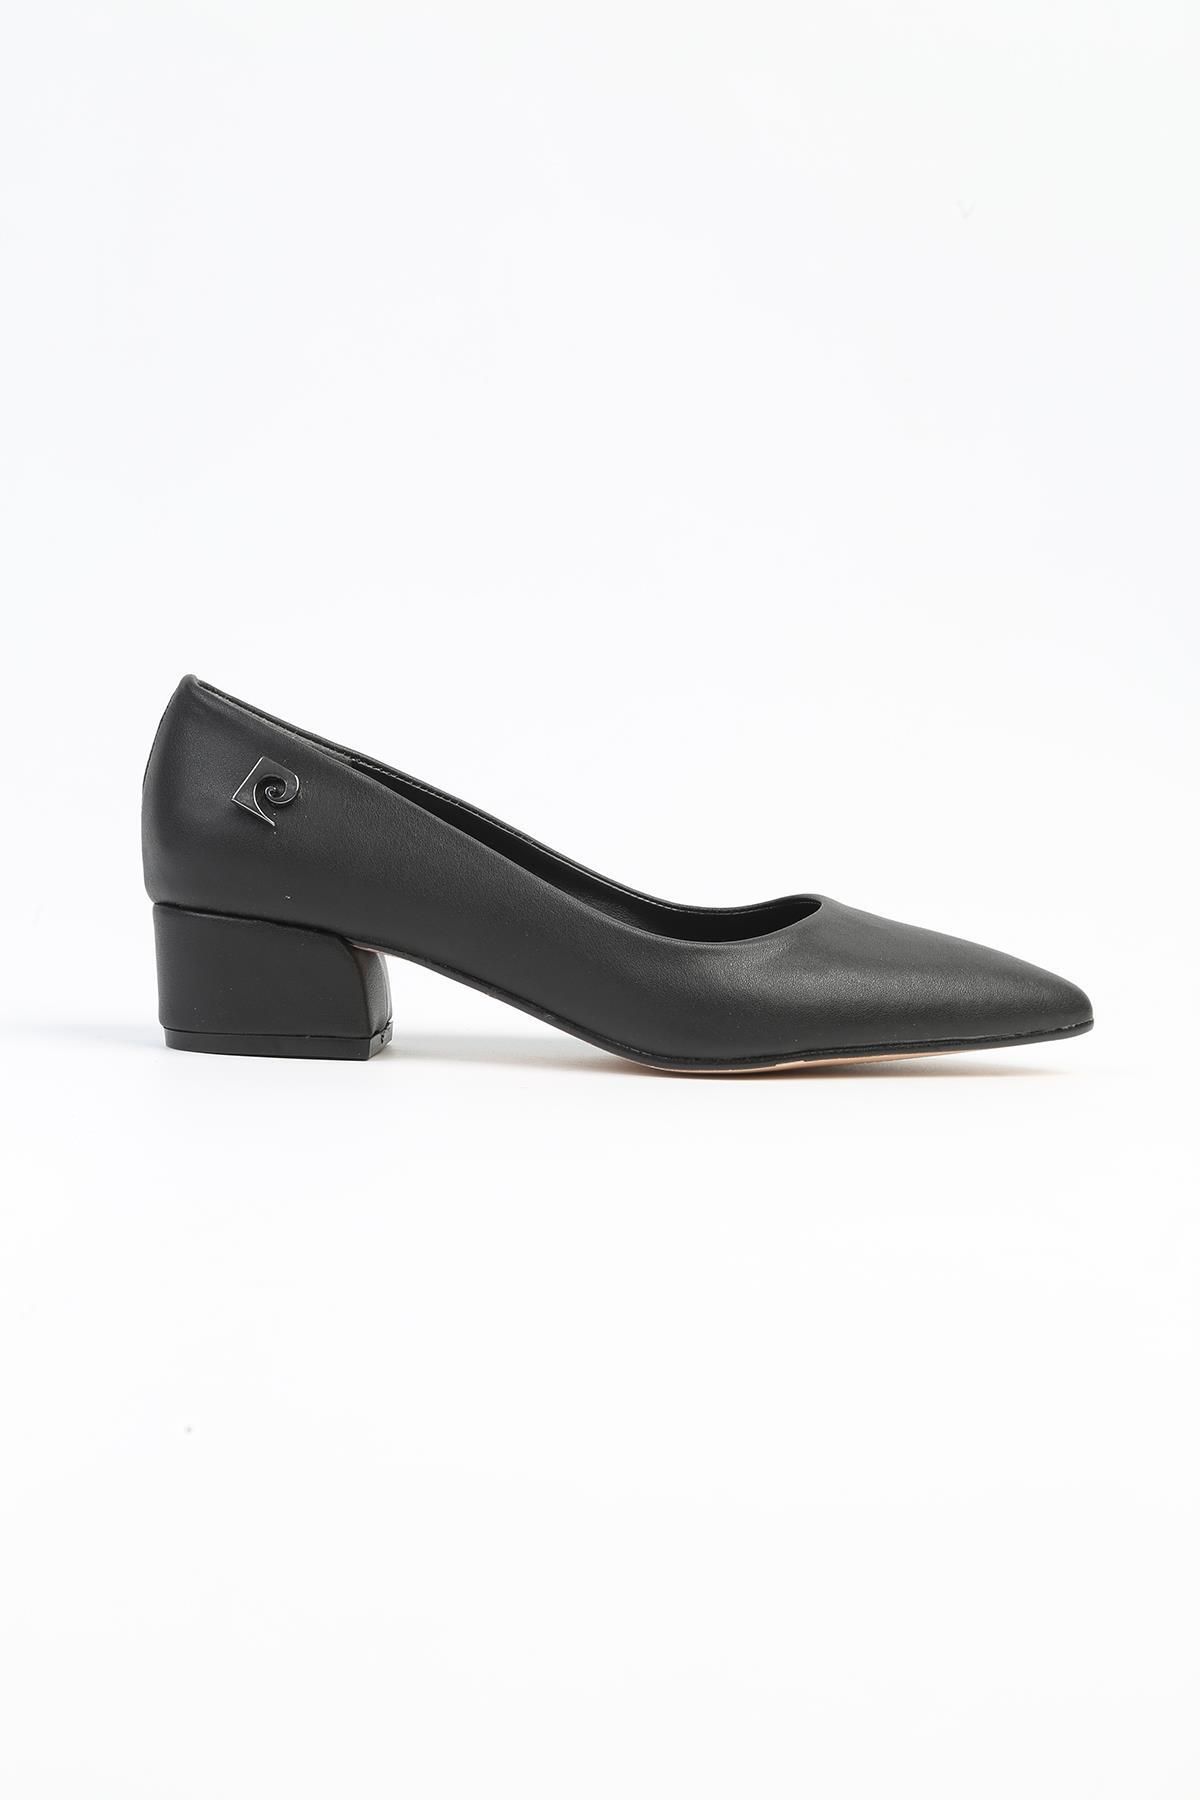 Pierre Cardin ® | PC-52566 - 3478 Siyah Cilt - Kadın Topuklu Ayakkabı